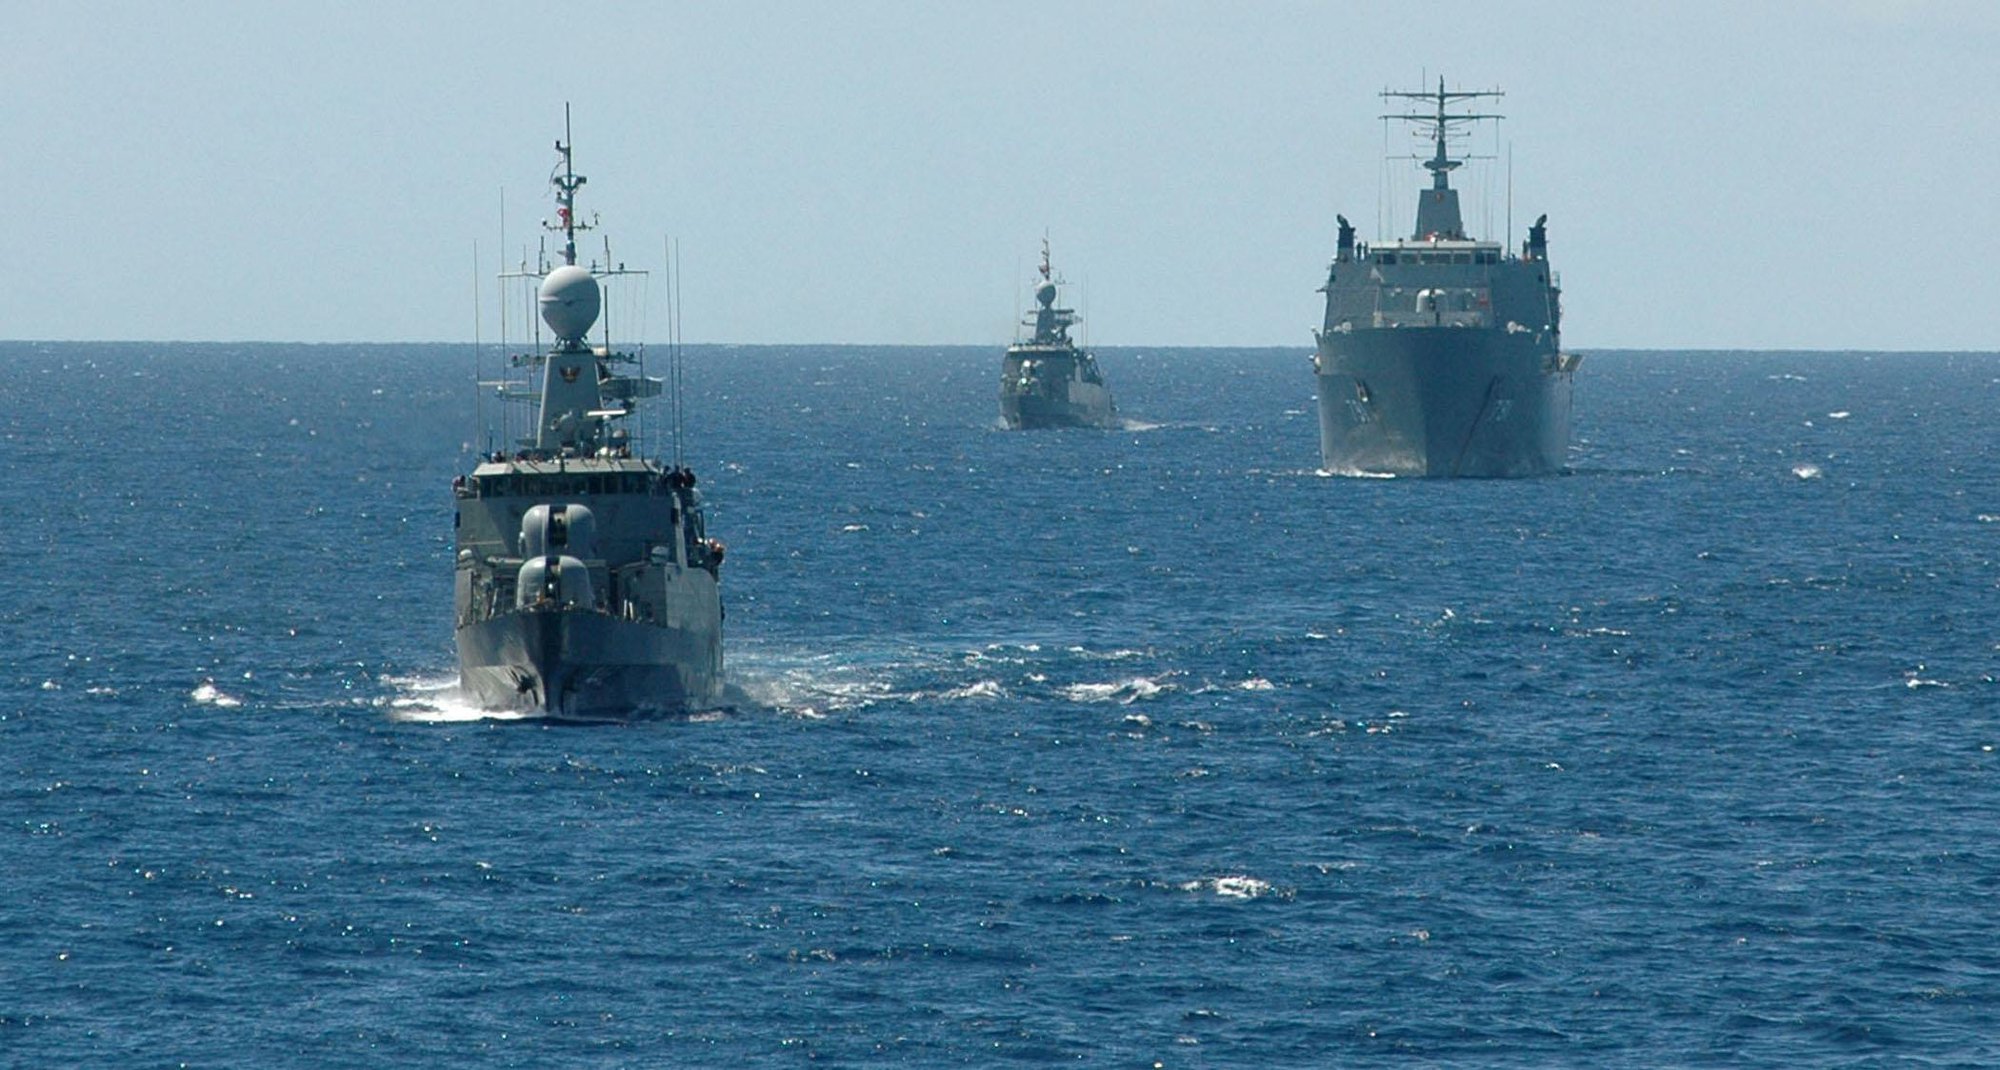 Tàu hộ vệ tên lửa của hải quân Thái Lan bị sóng đánh chìm - Ảnh 7.